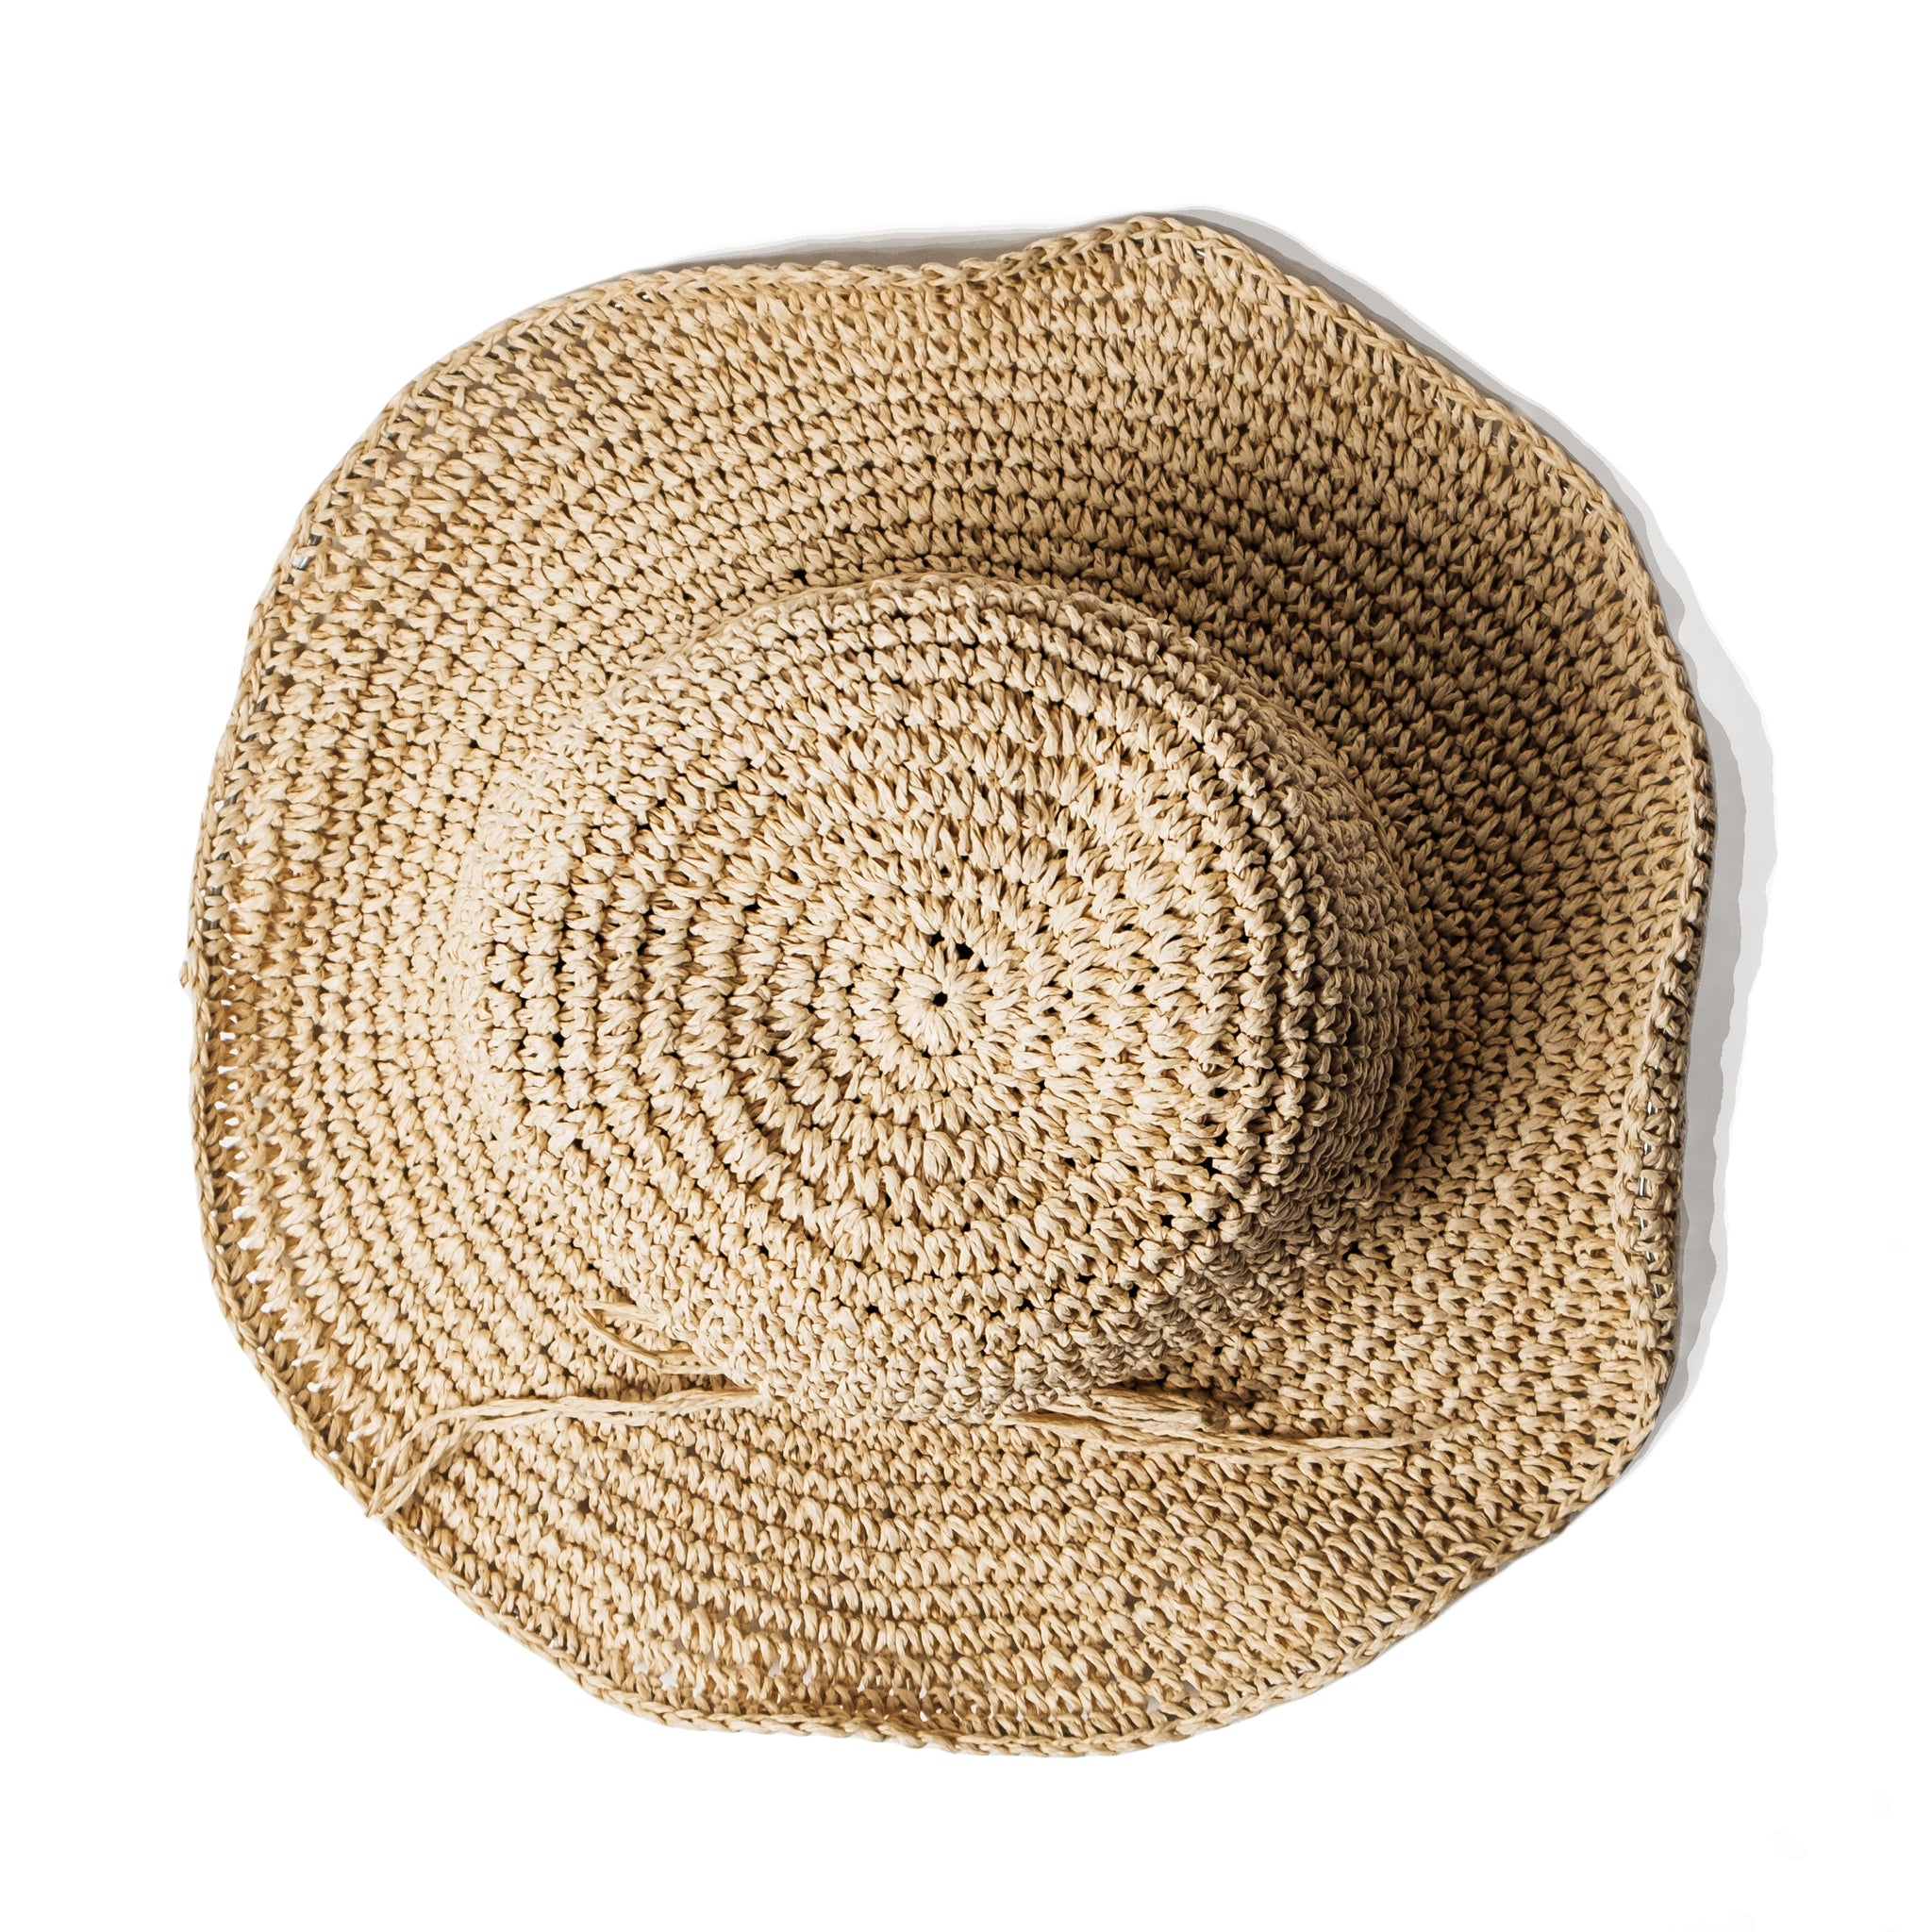 Chokore Summer Straw Bucket Hat (Beige)